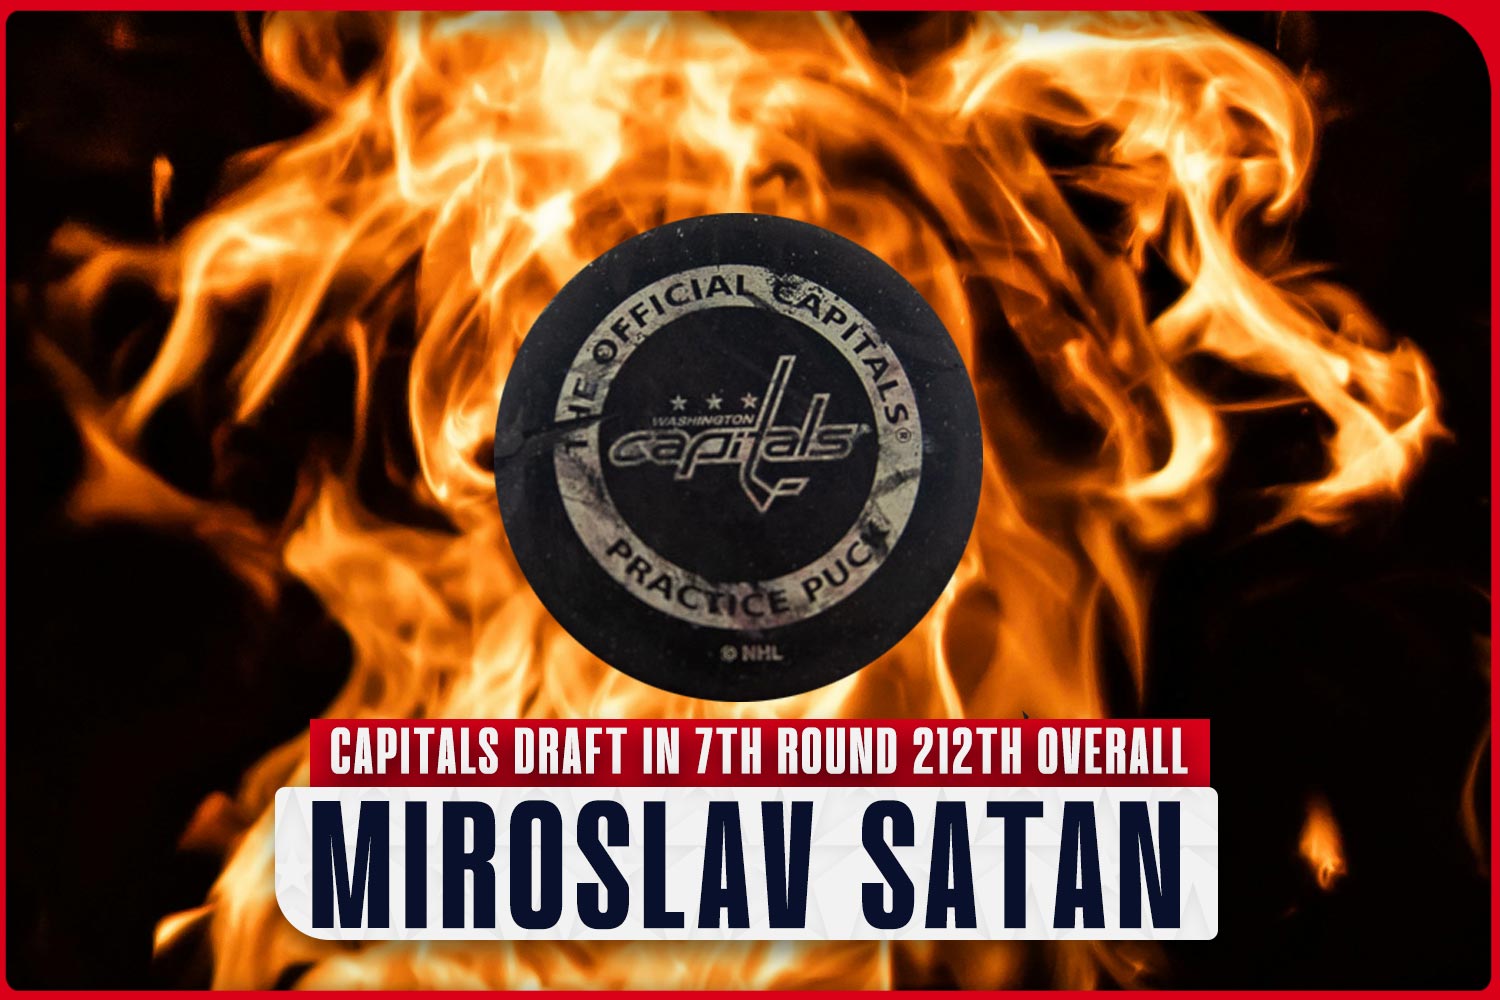 capitals-draft-miroslav-satan.jpg